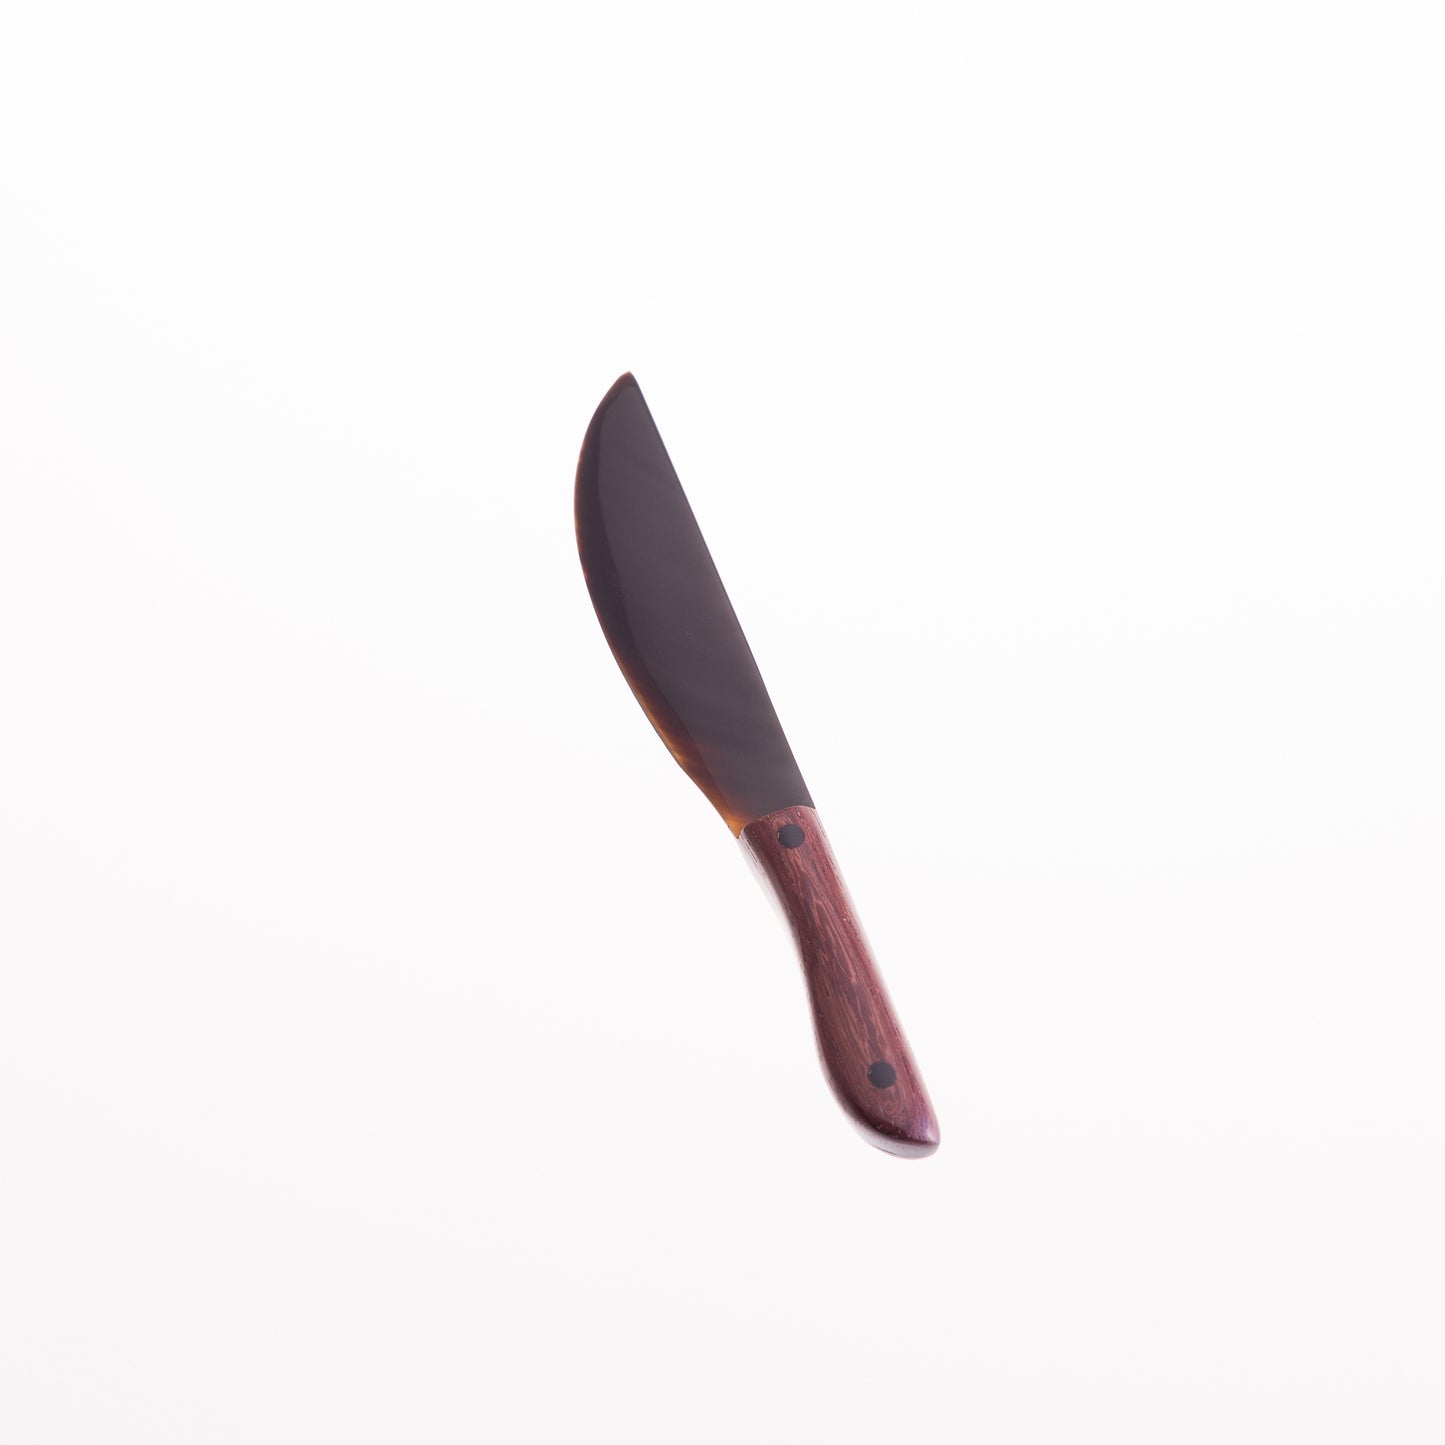 Horn Butter Knife - Horn/Rosewood Handle